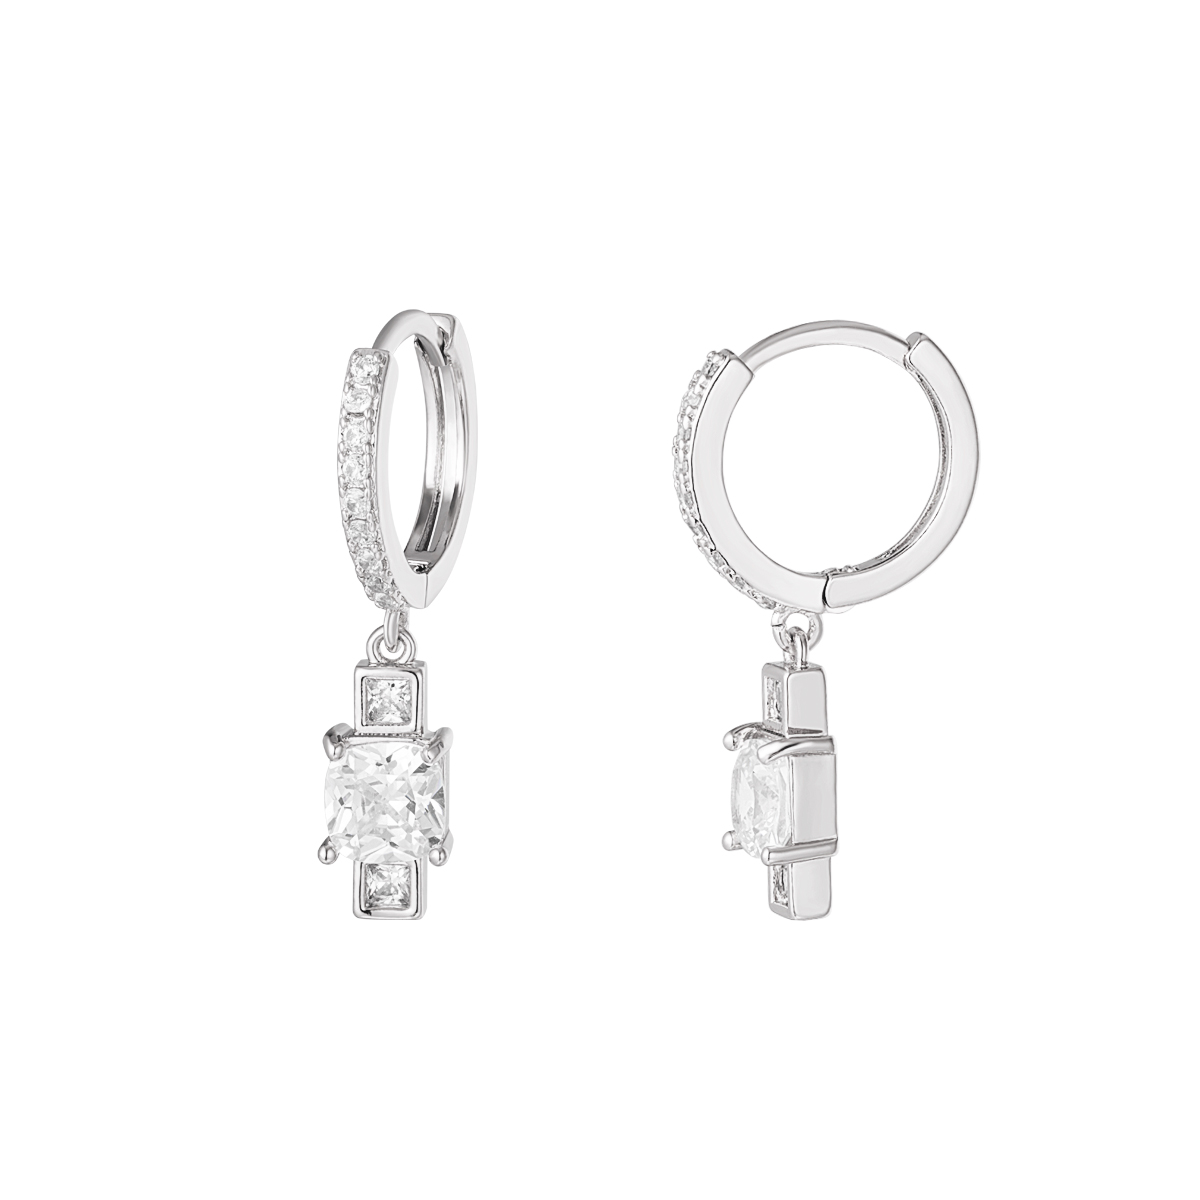 Boucle d'oreille charm zircon - Collection Sparkle